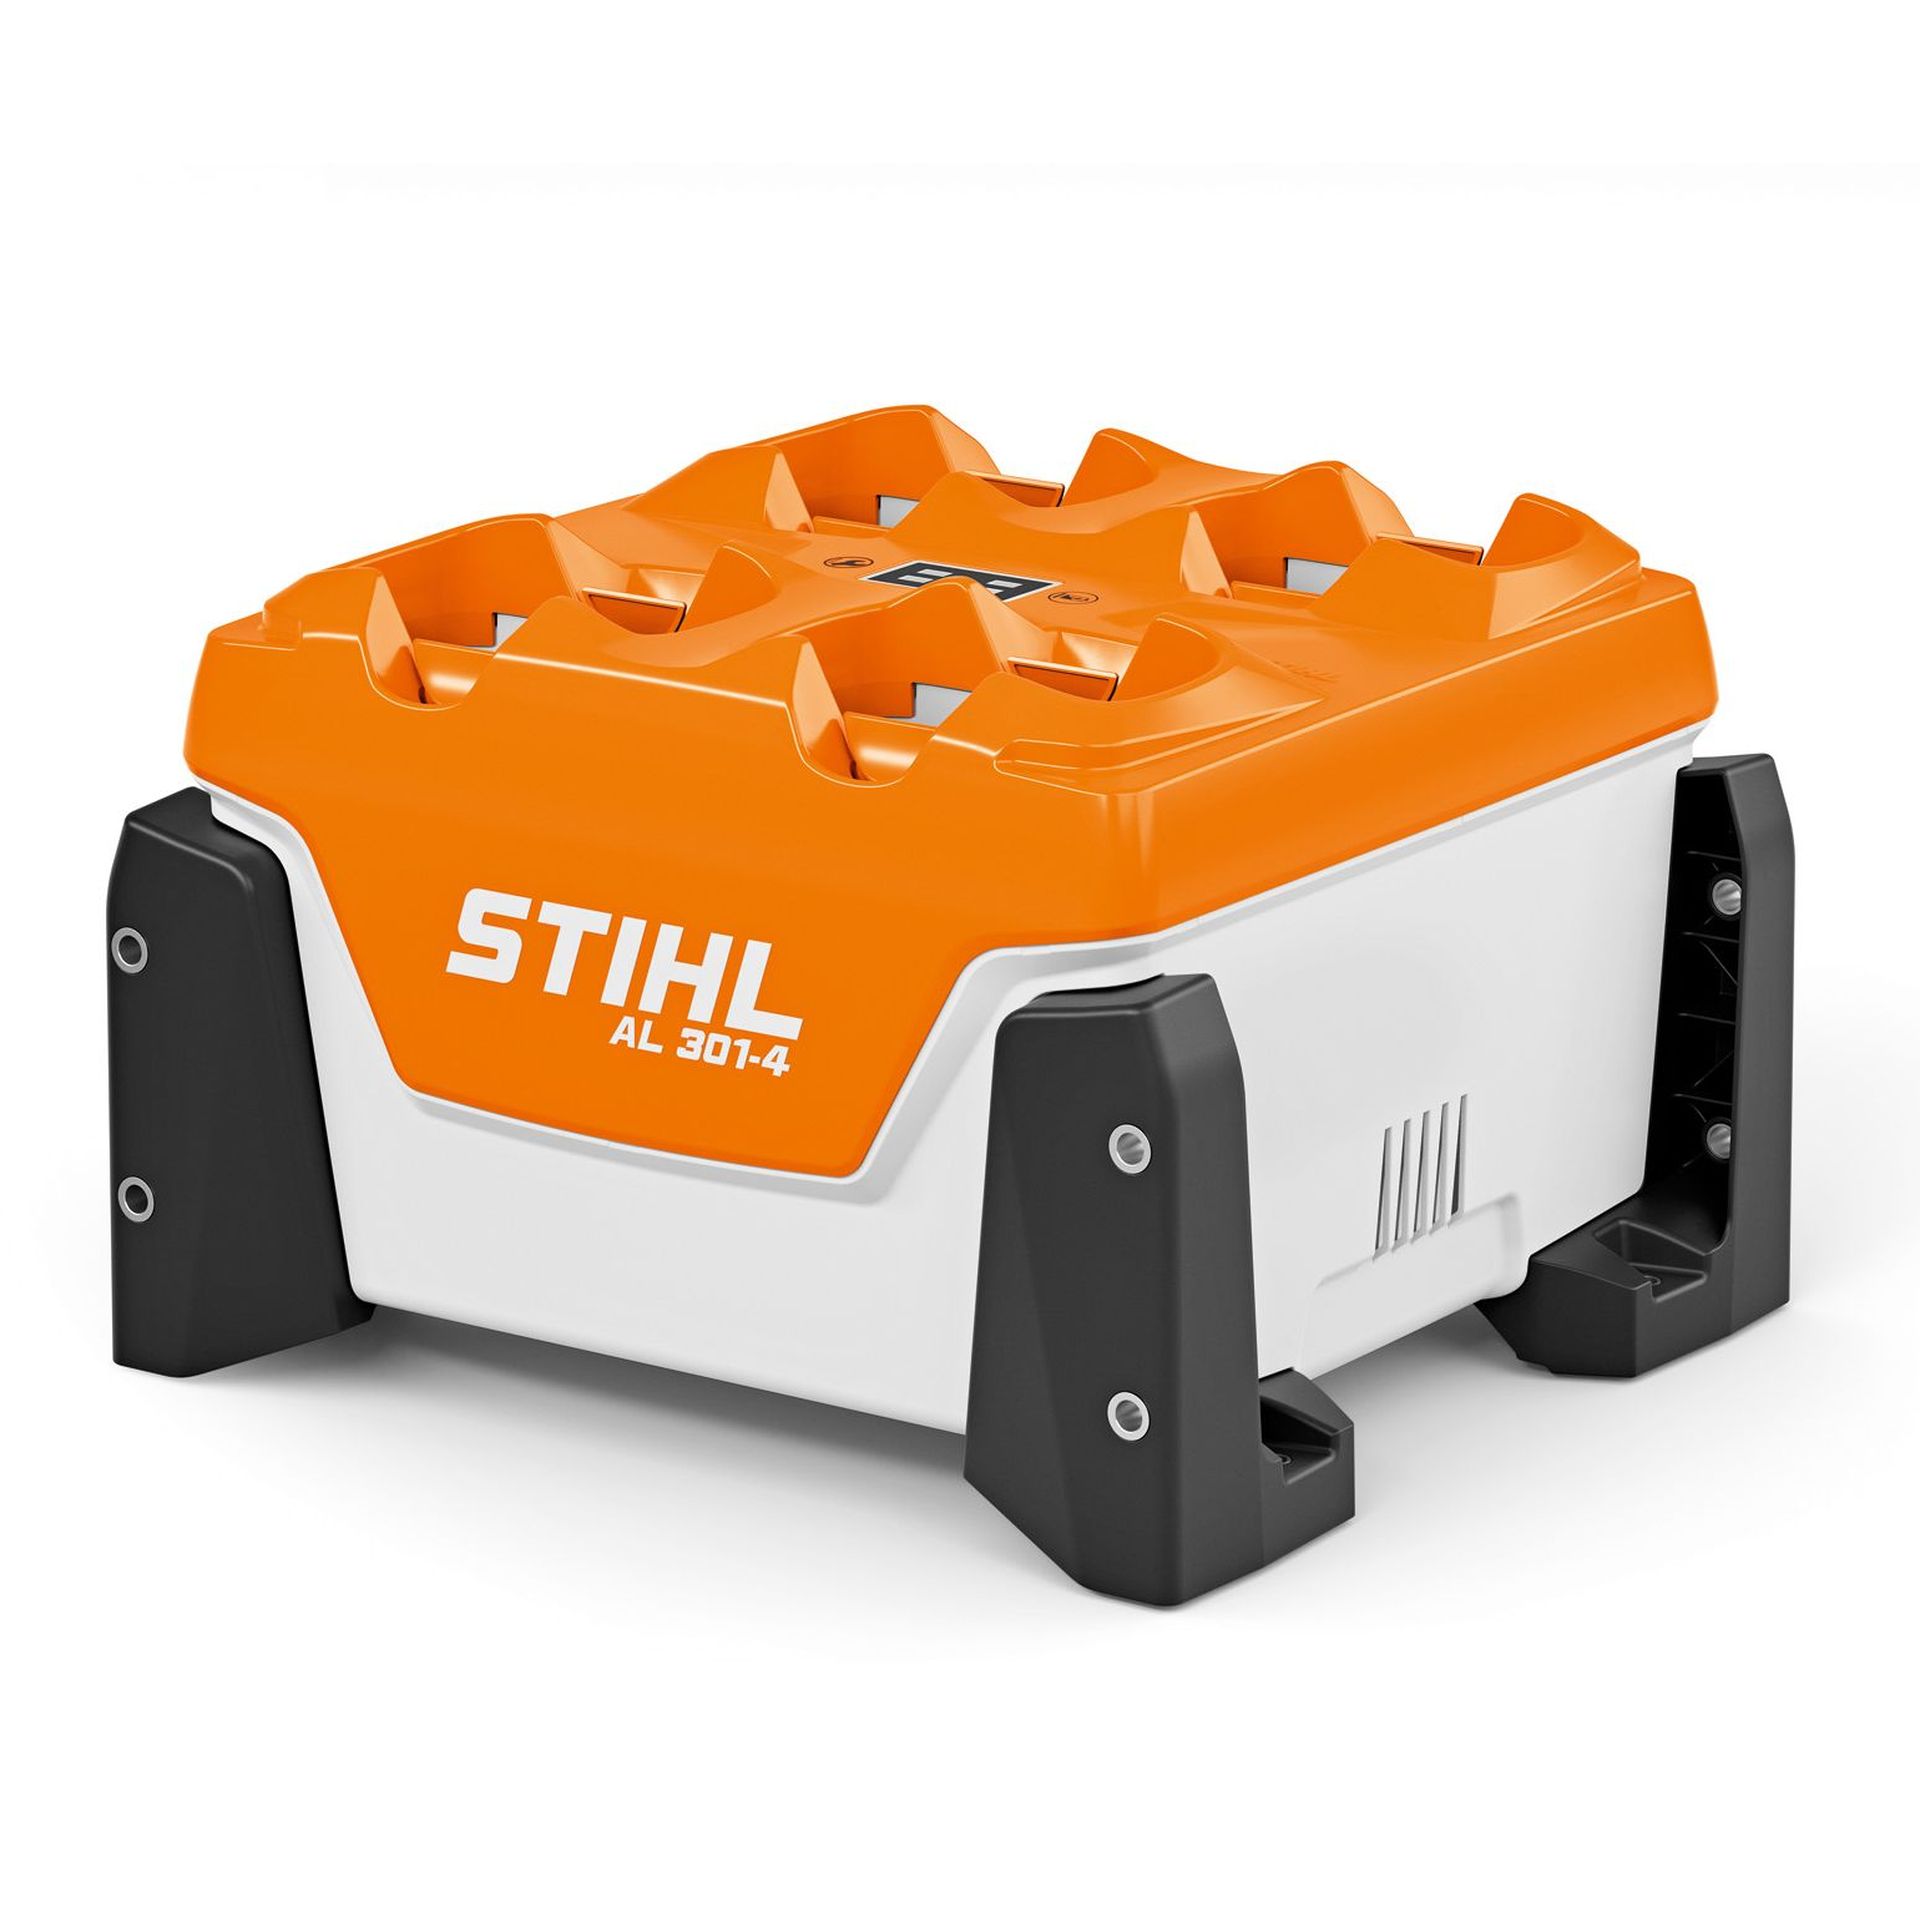 Multi-chargeur AL 301-4 STIHL - Chargez jusqu'à 4 batterie STIHL